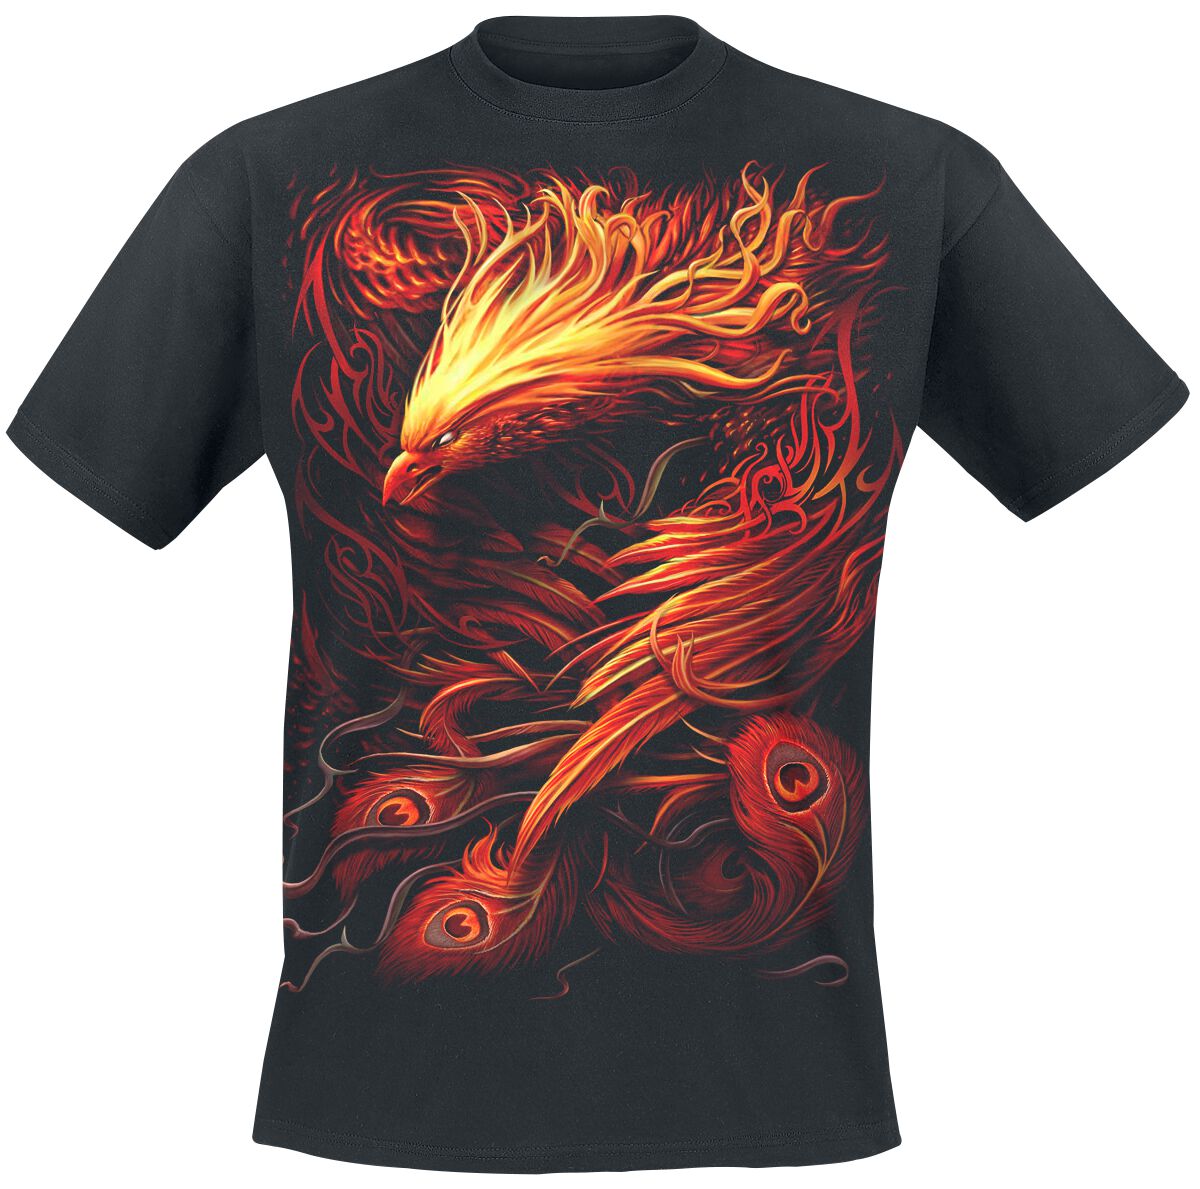 Spiral - Gothic T-Shirt - Phoenix Arisen - S bis XXL - für Männer - Größe S - schwarz